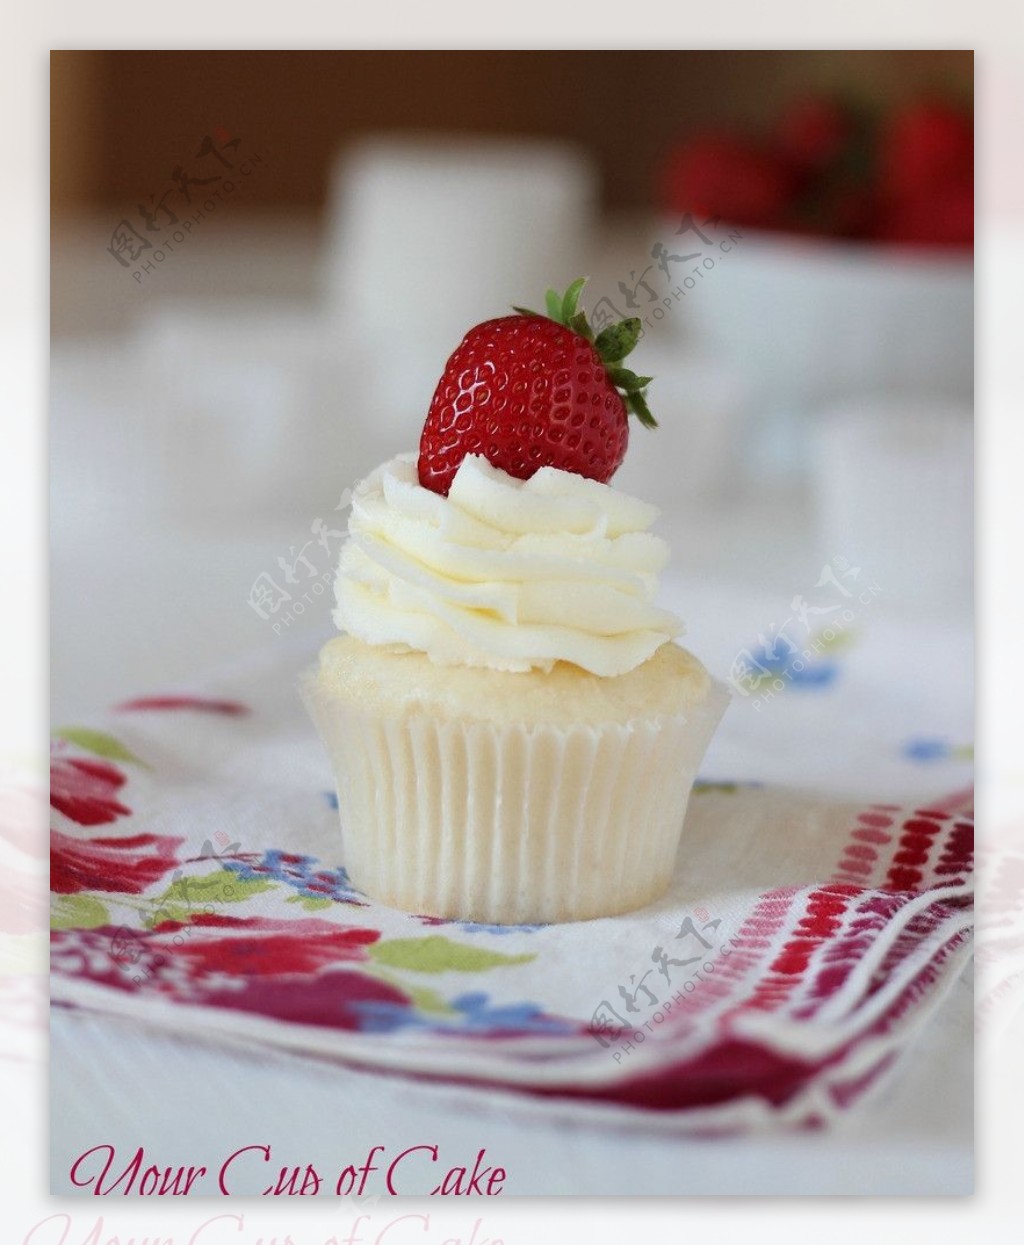 草莓鲜奶蛋糕图片